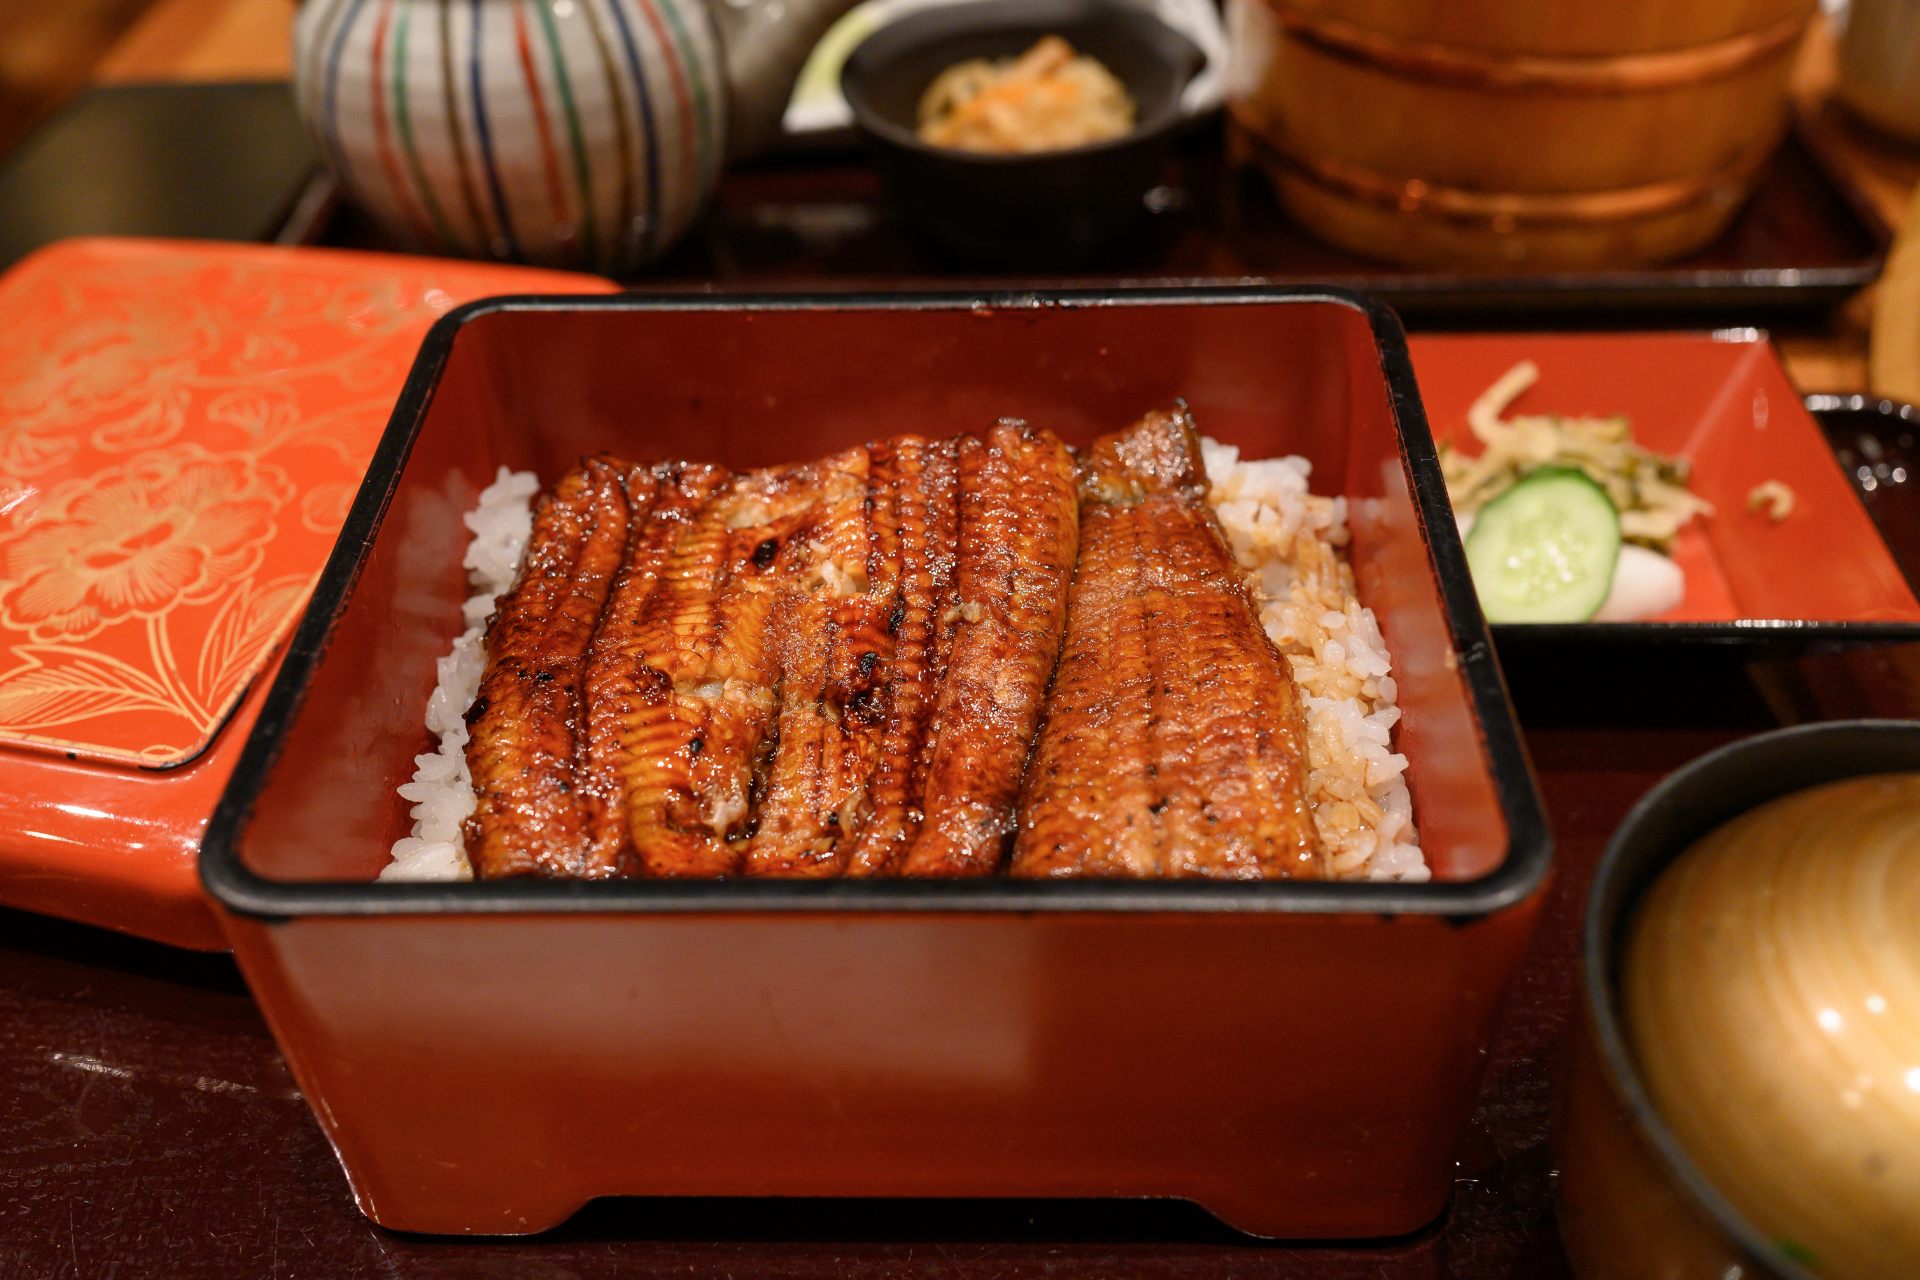 Unaju: paling op rijst geserveerd in een lakdoosje